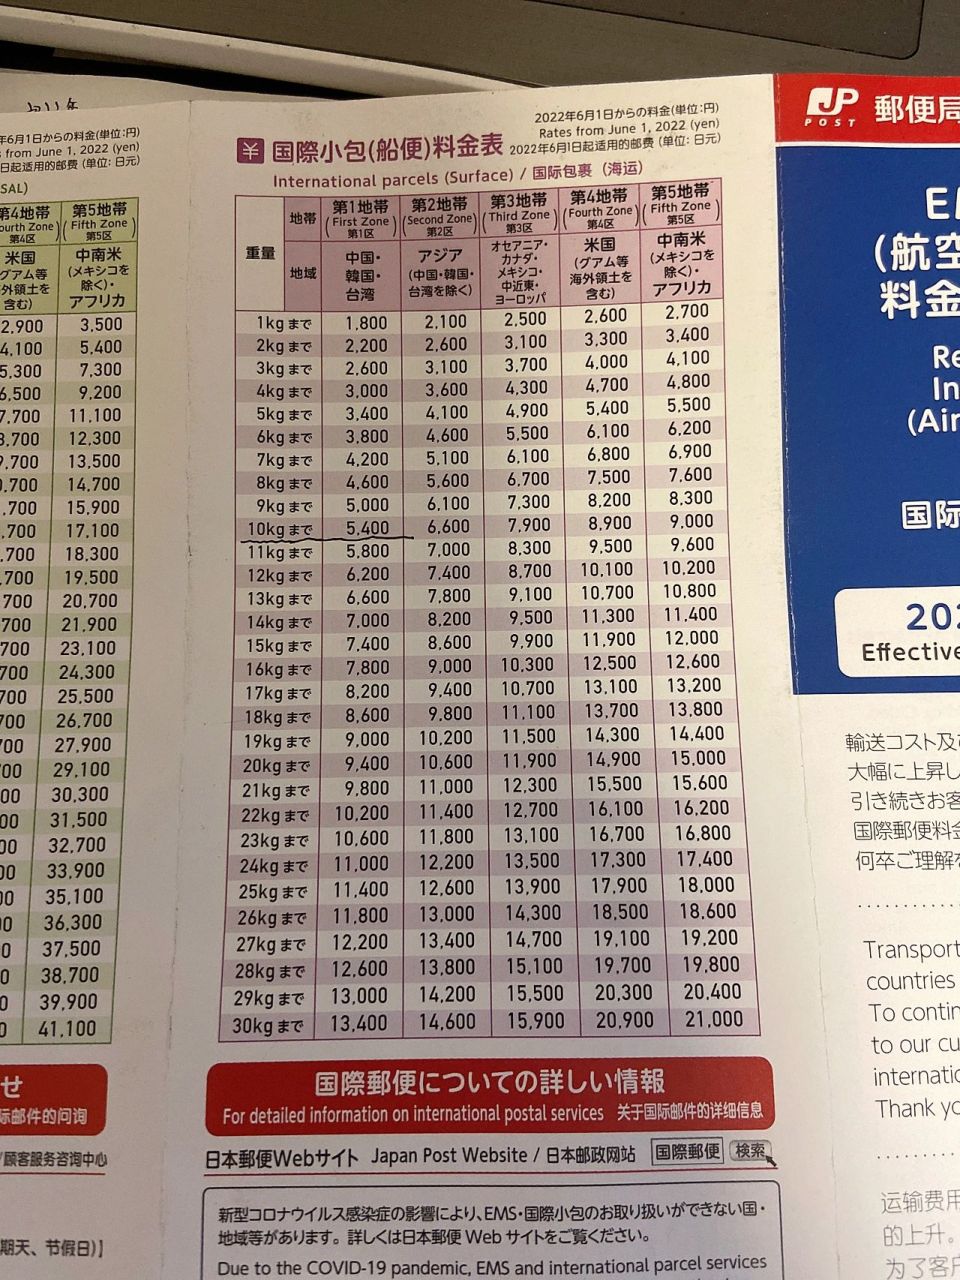 日本邮局ems,海运最新价格表 我每次都发10kg海运,还好现在汇率低 10